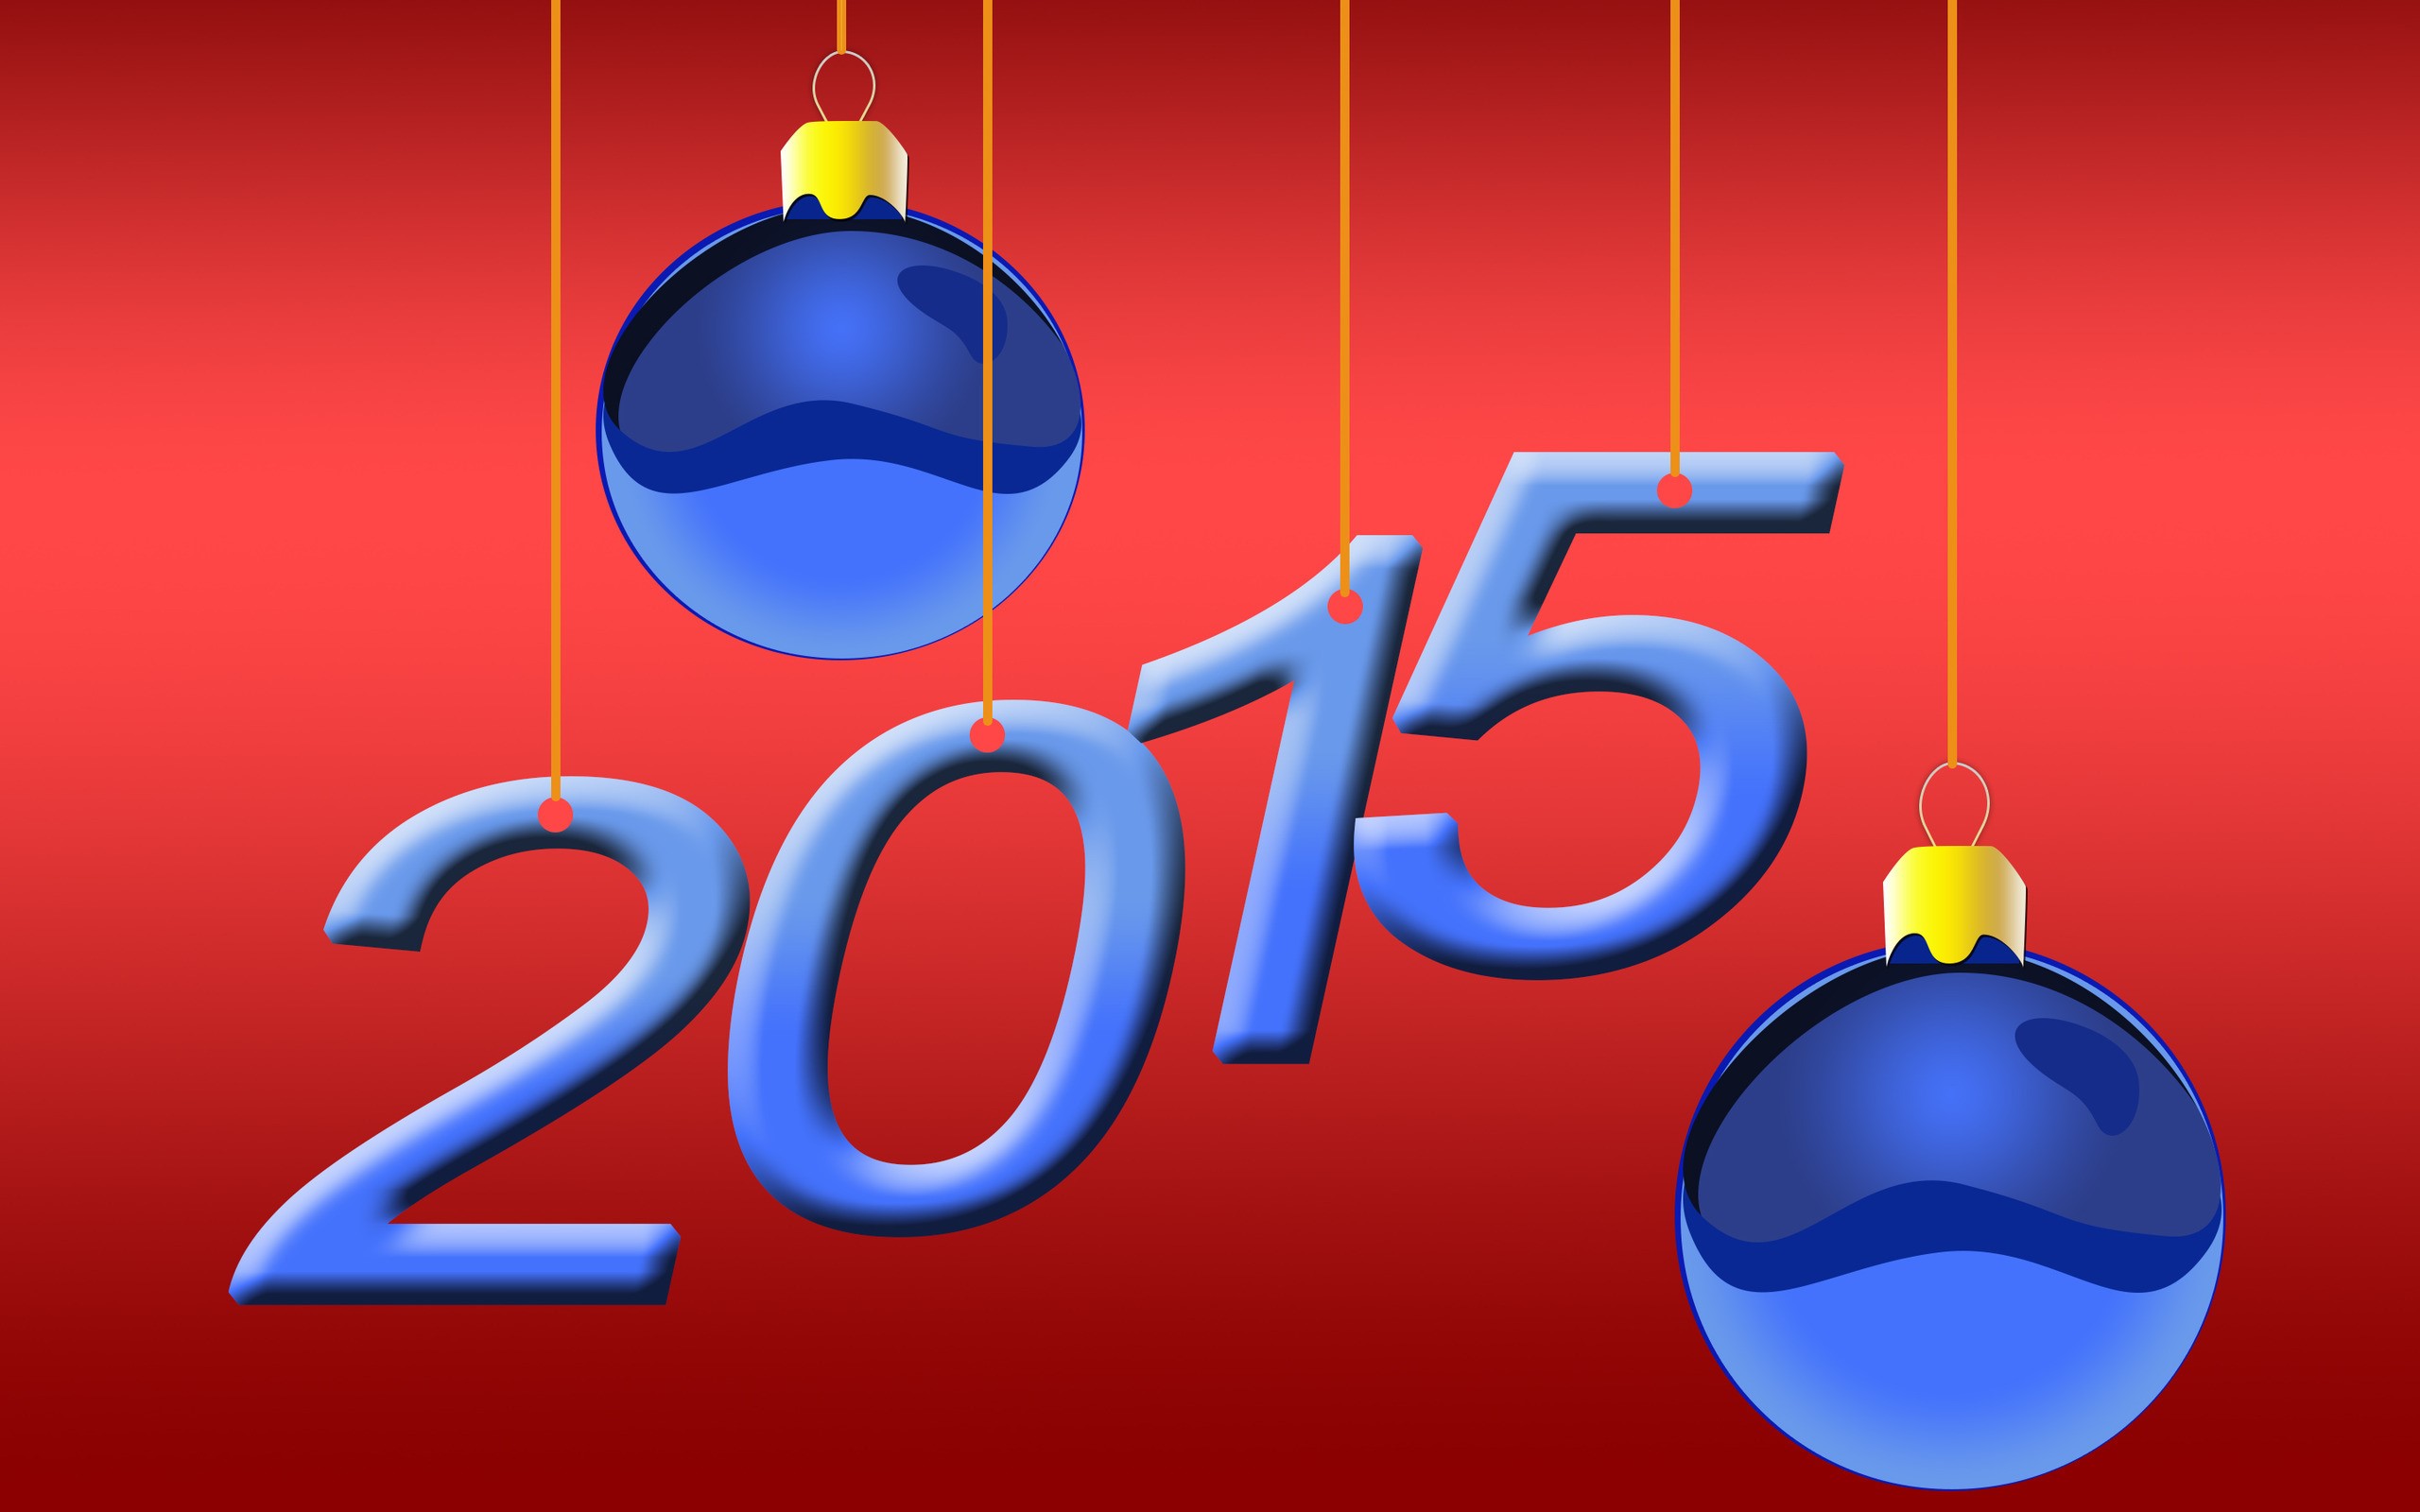 Скачать обои бесплатно Новый Год, Праздничные, Новый Год 2015 картинка на рабочий стол ПК